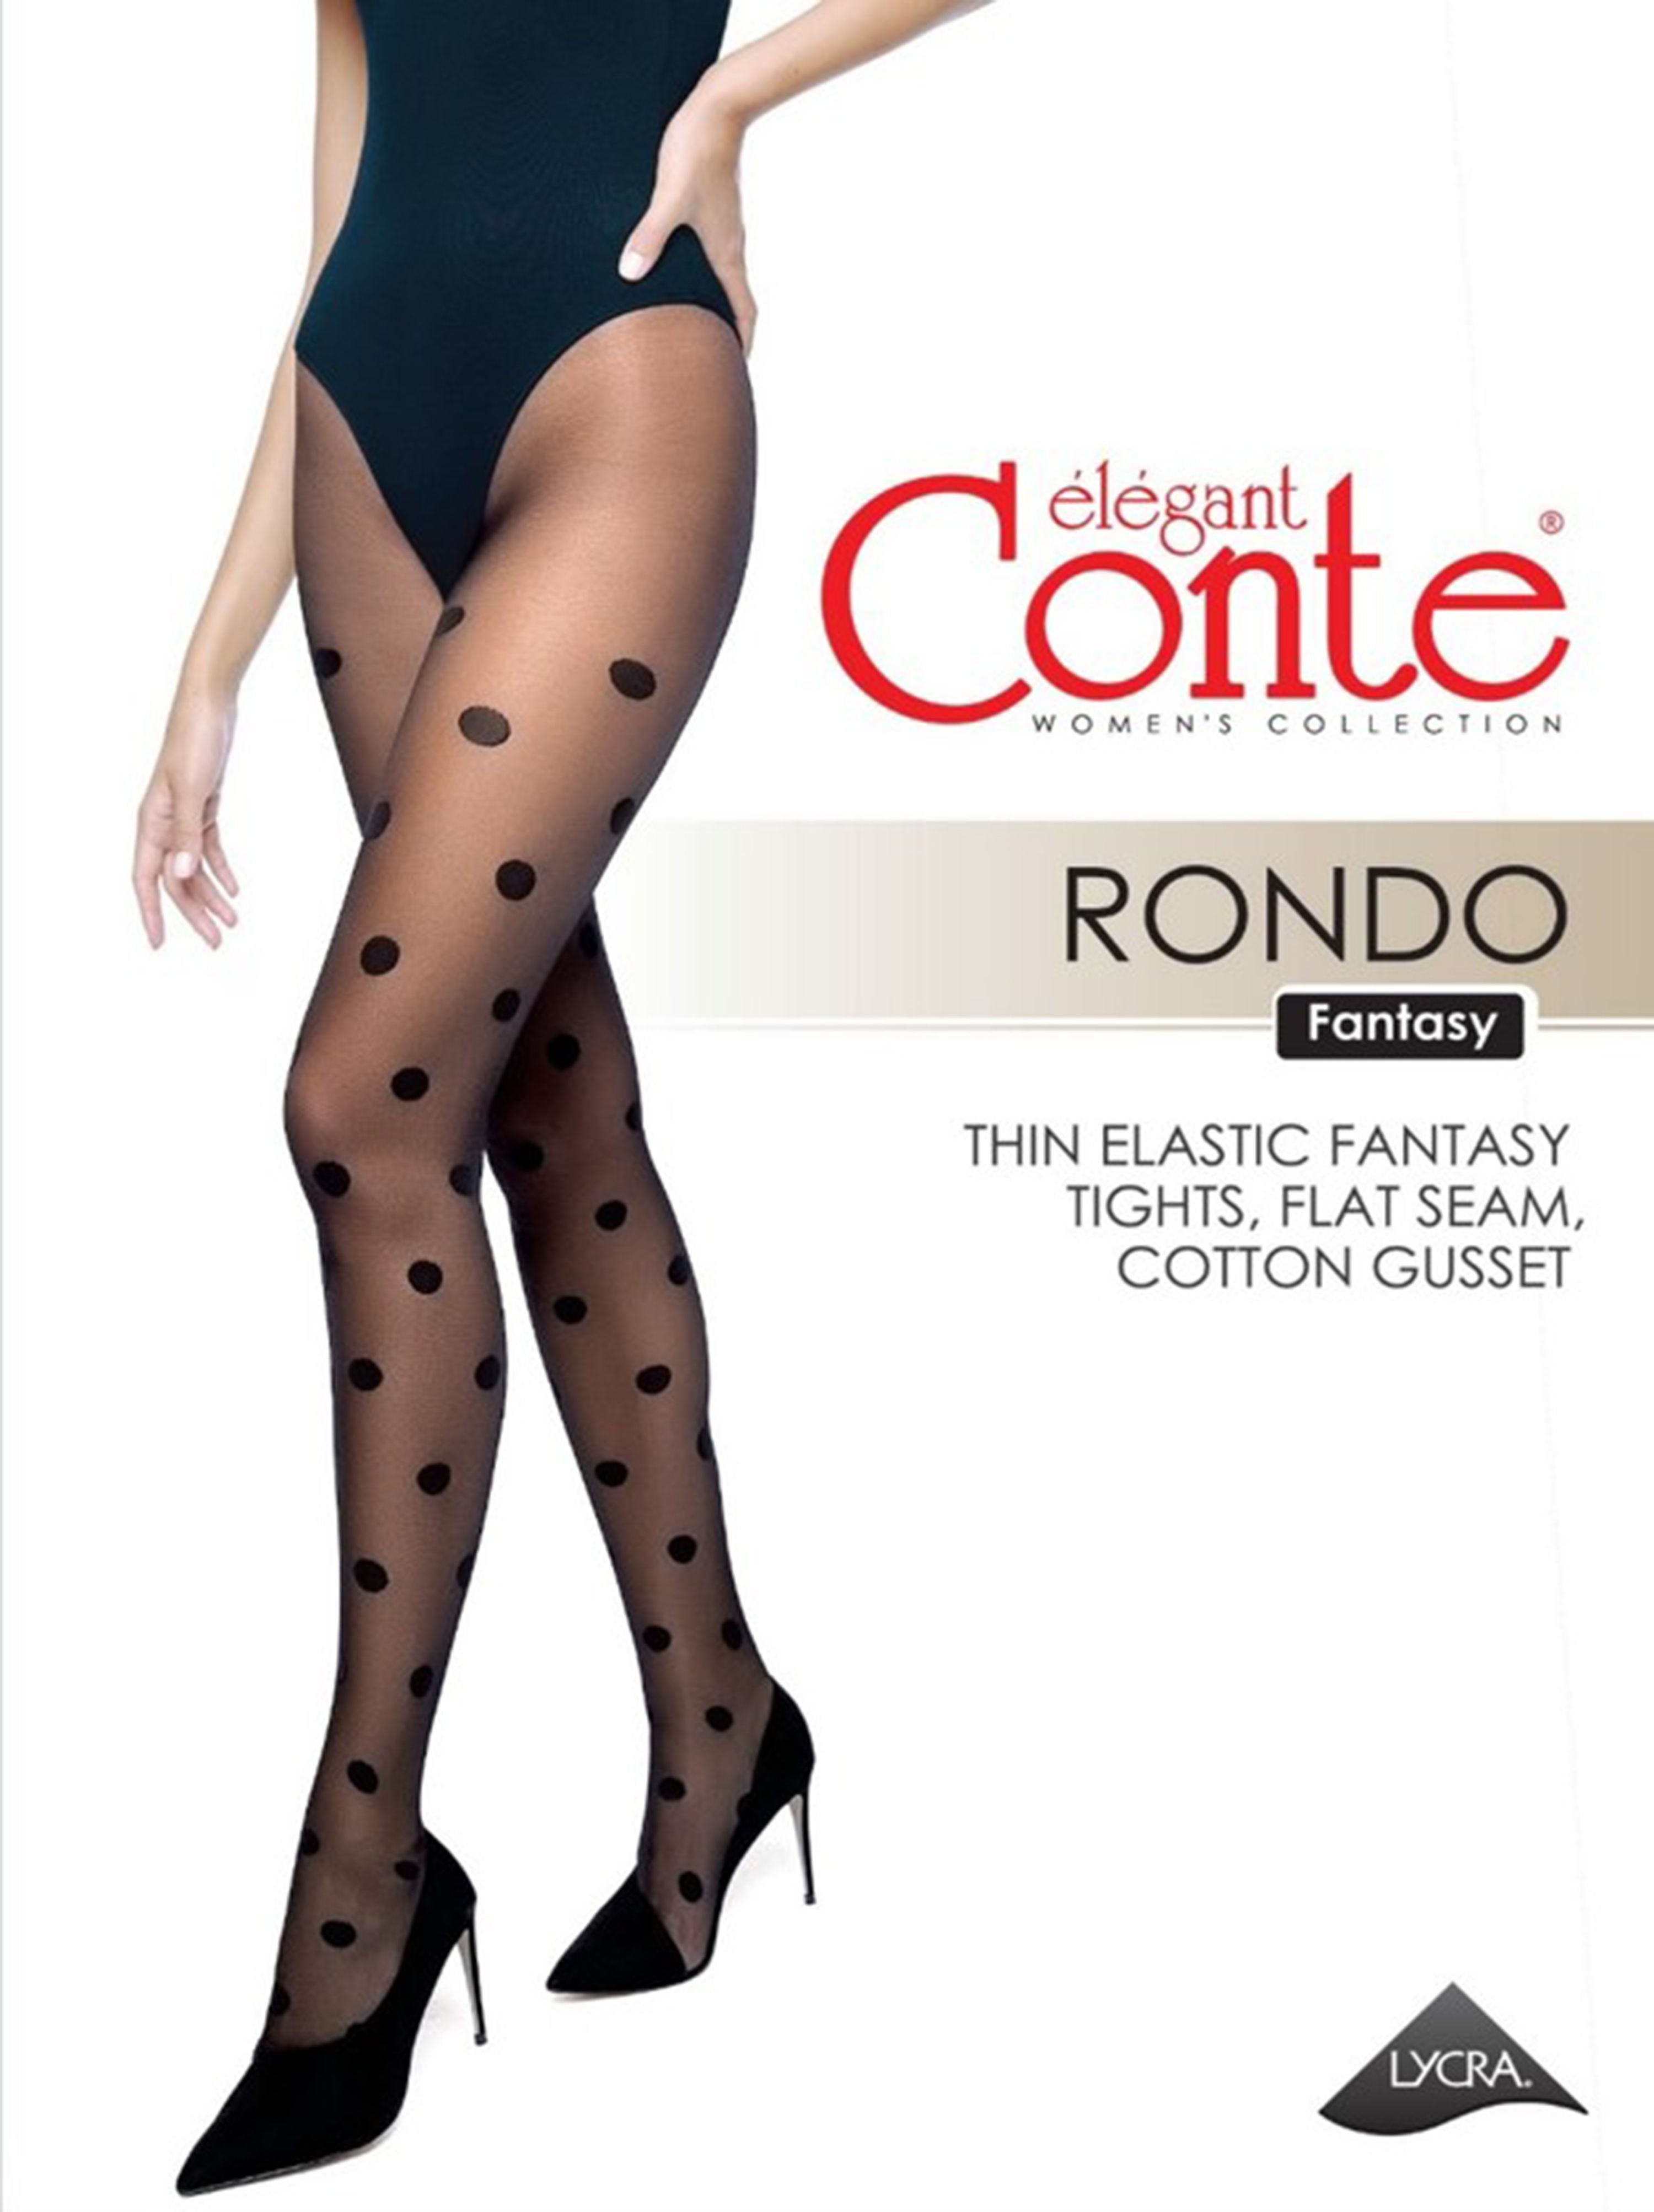 Prosojne črne 20 denske hlačne nogavice z velikimi pikicami Conte Elegant Rondo